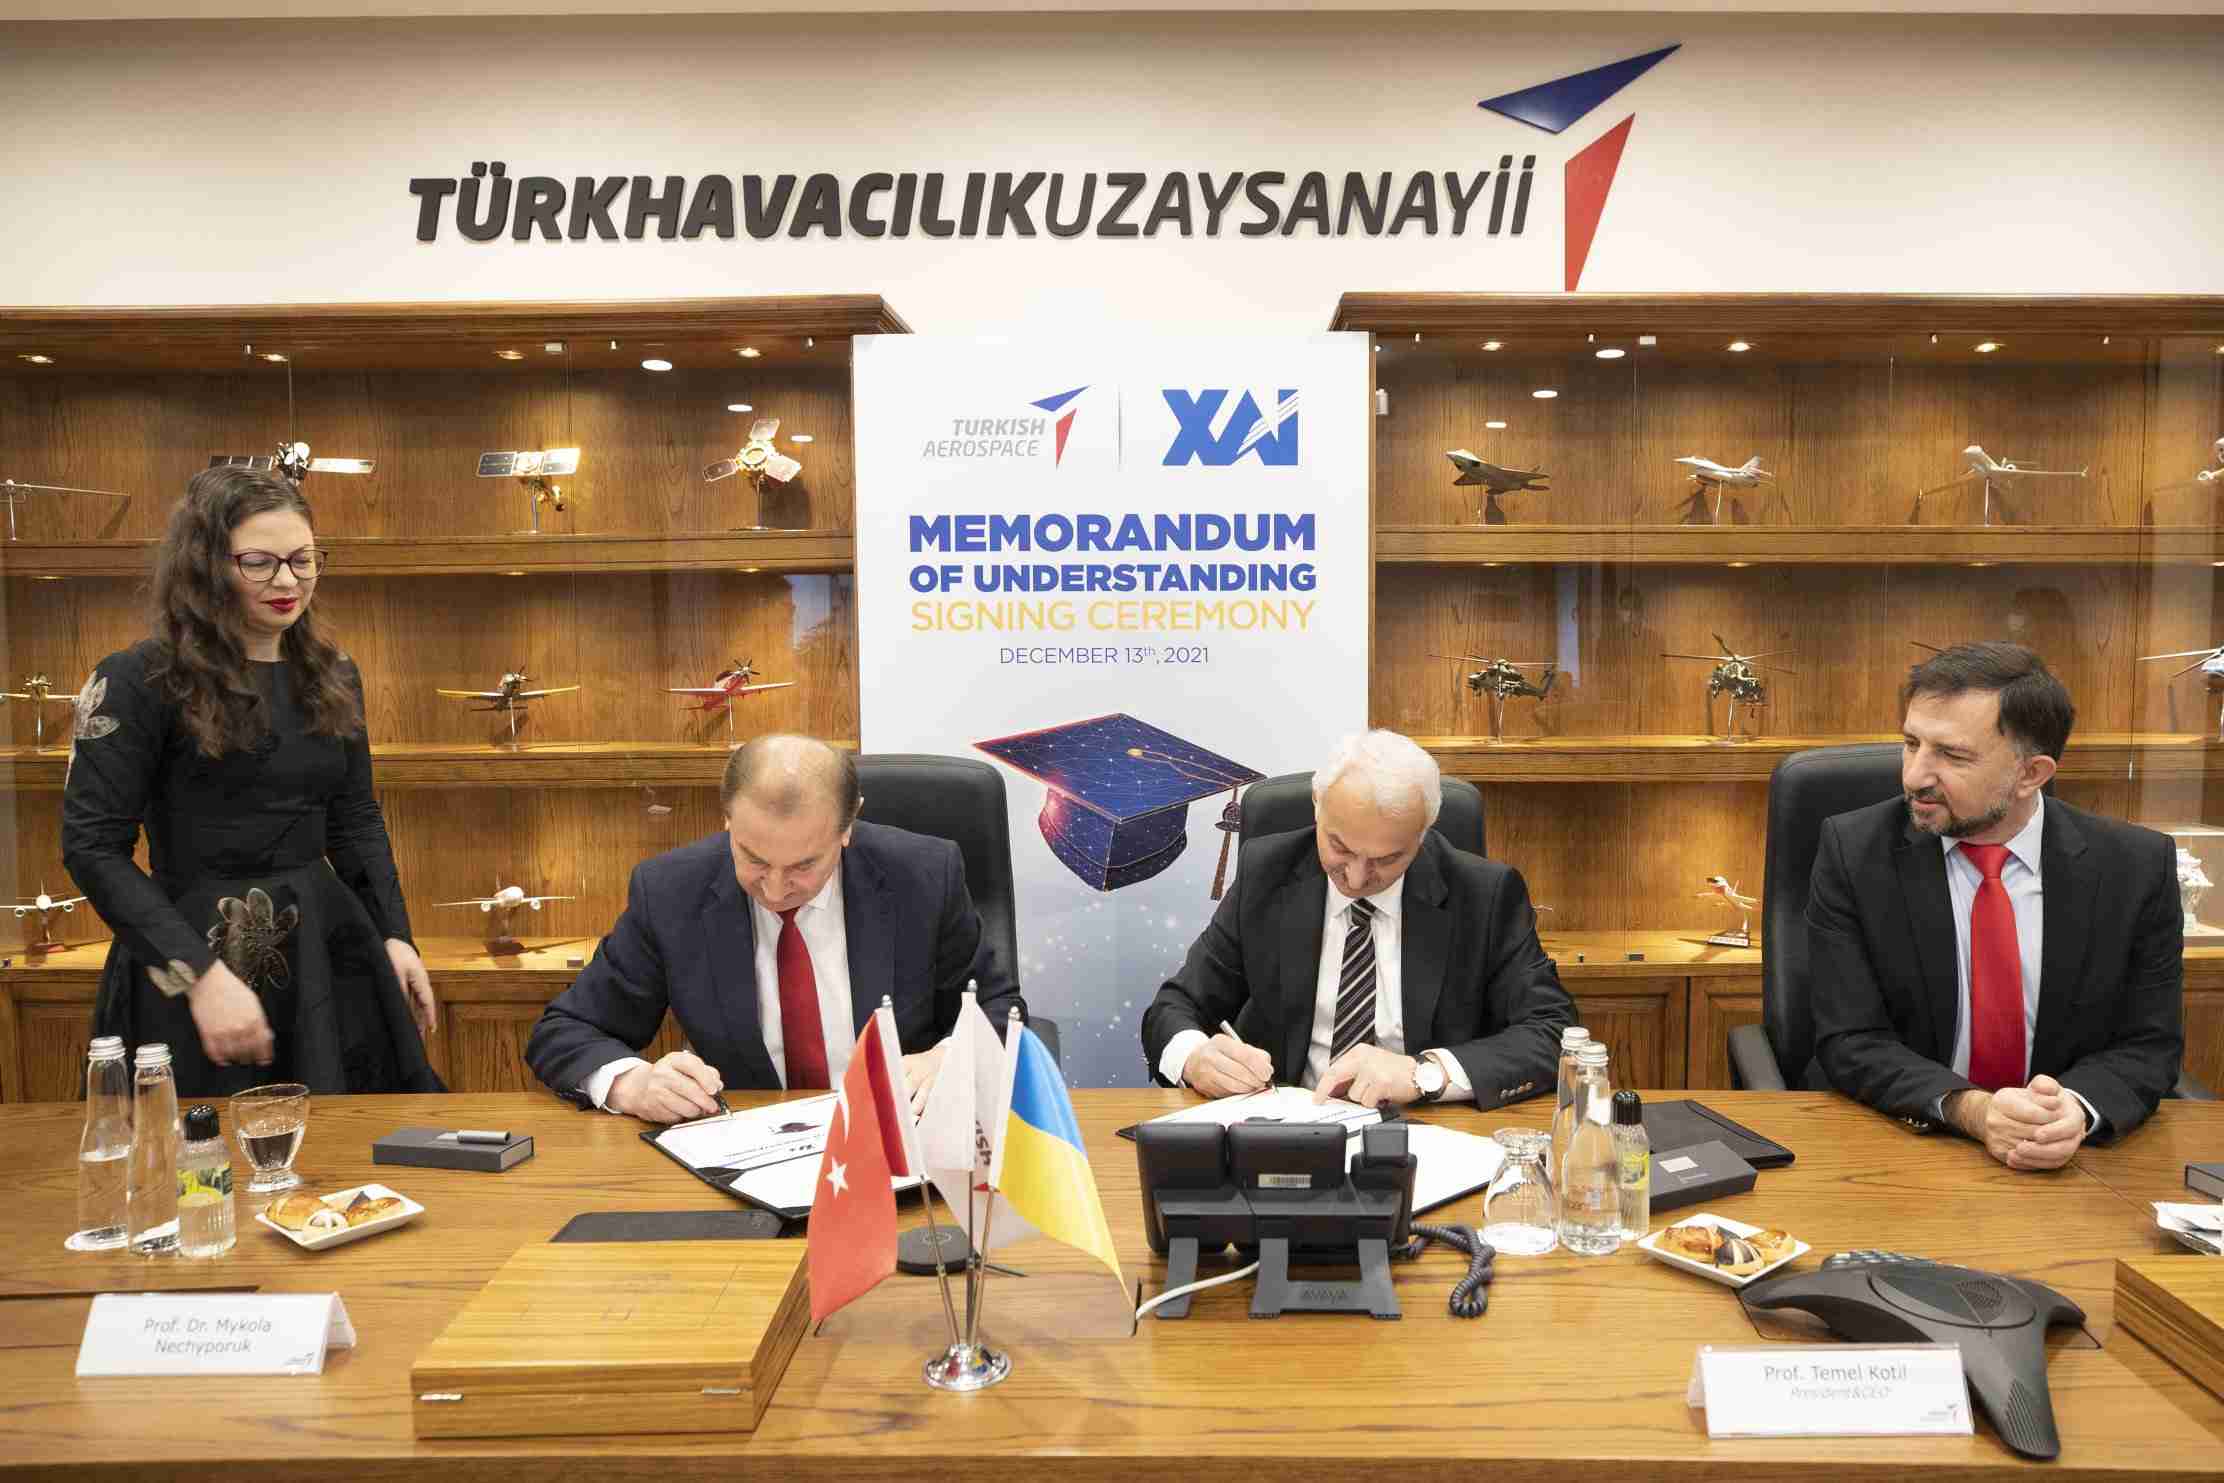 TUSAŞ, Ukrayna Ulusal Havacılık Üniversitesi  ile işbirliği yapacak